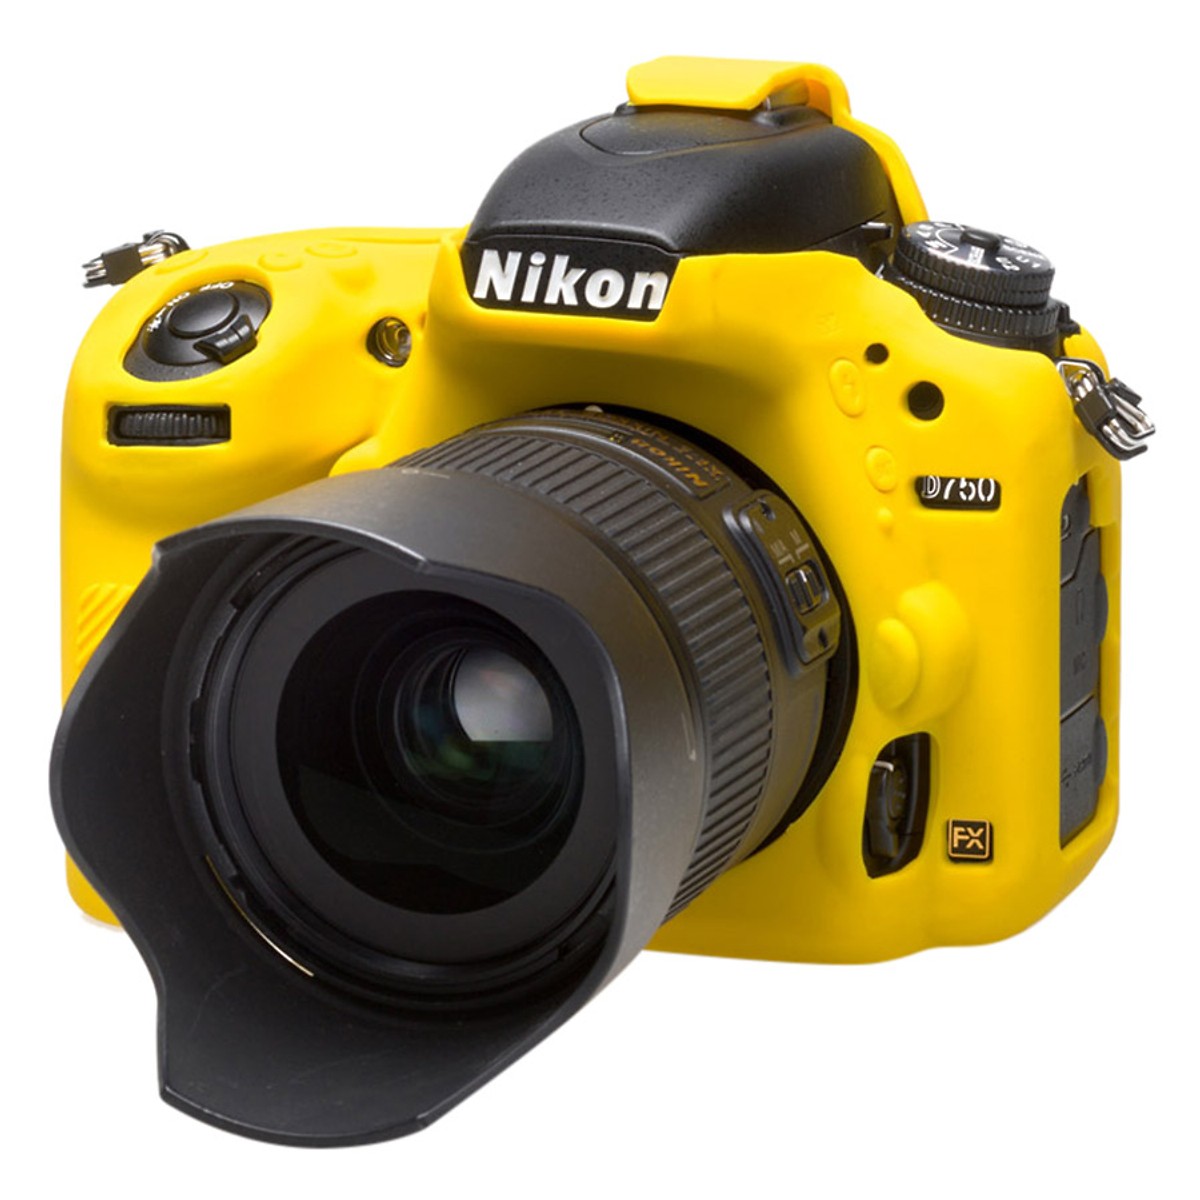 Bao Silicon Bảo Vệ Máy Ảnh Easy Cover Cho Nikon D7500 ( VÀNG)